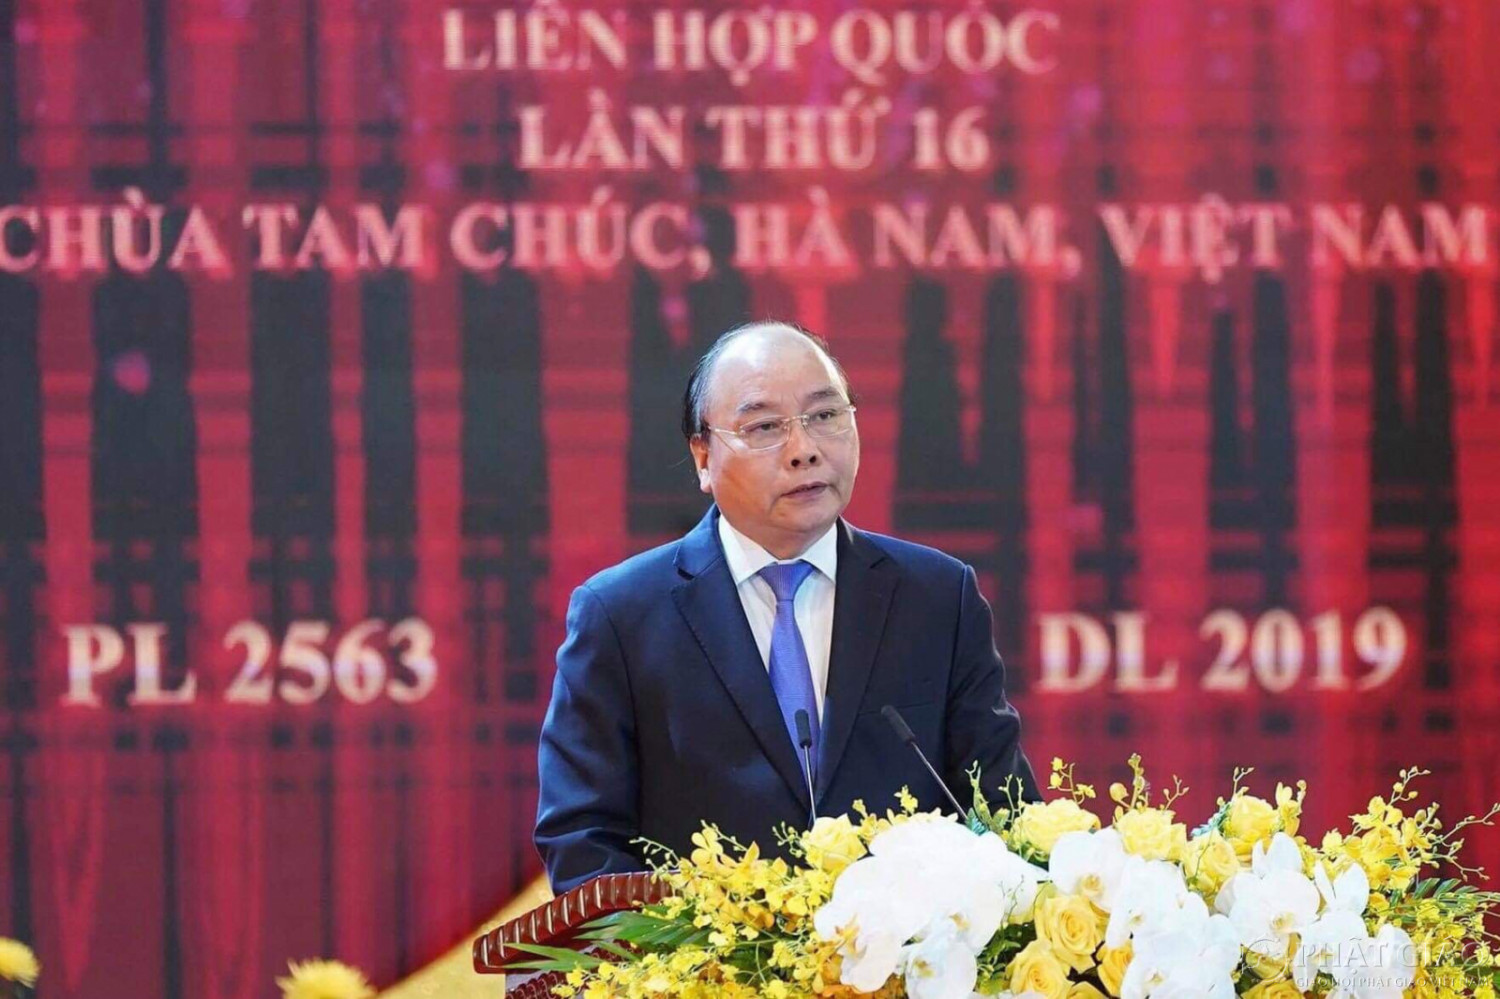 Thủ tướng Nguyễn Xuân Phúc: Chúng ta hãy cùng tĩnh tâm, chiêm nghiệm lời Phật dạy